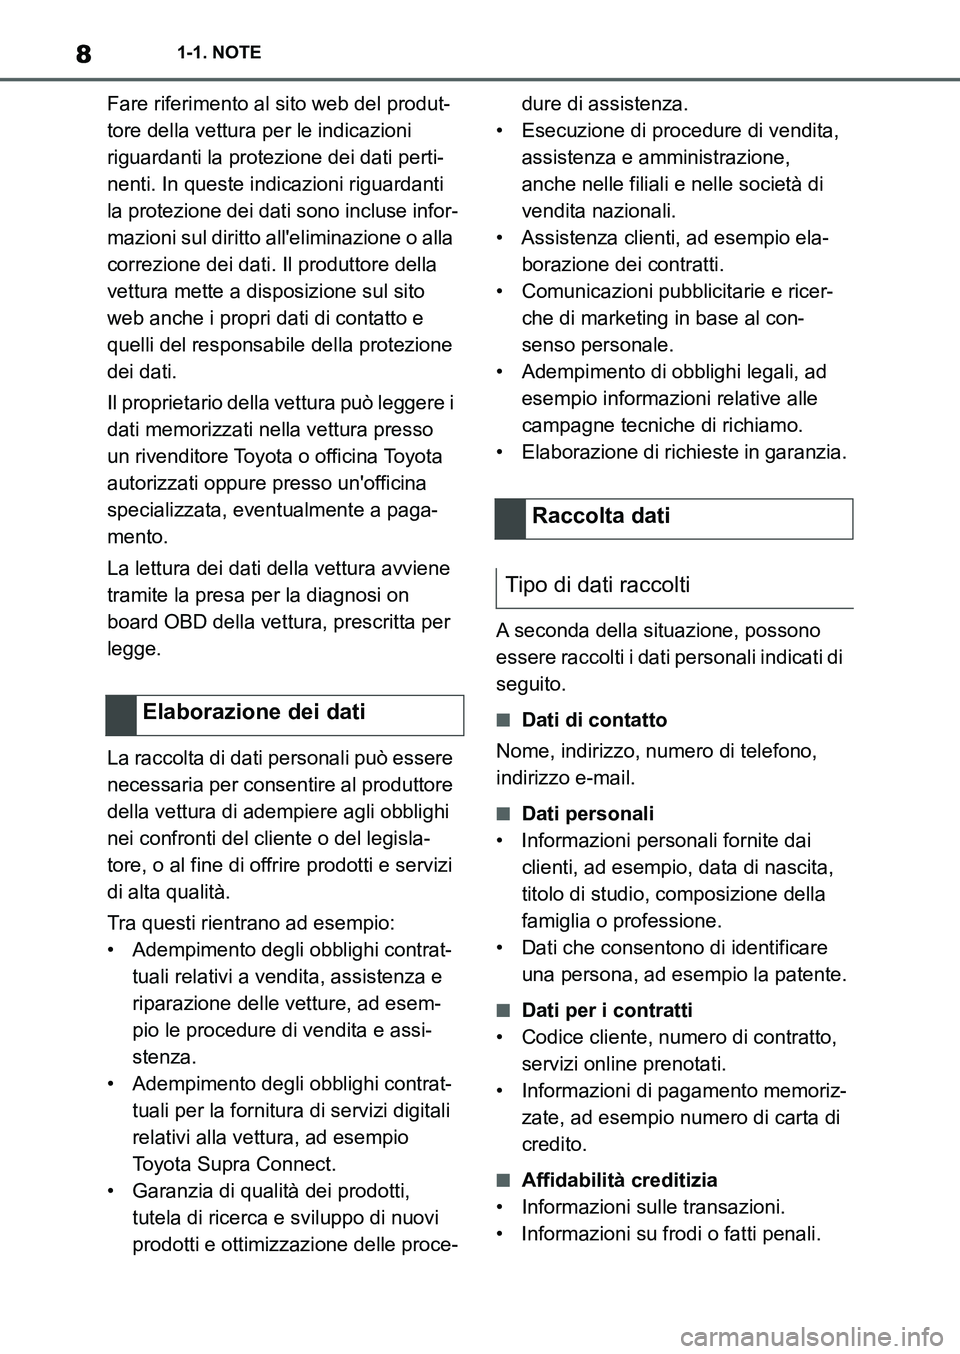 TOYOTA SUPRA 2022  Manuale duso (in Italian) 81-1. NOTE
Fare riferimento al sito web del produt-
tore della vettura per le indicazioni 
riguardanti la protezione dei dati perti-
nenti. In queste indicazioni riguardanti 
la protezione dei dati so